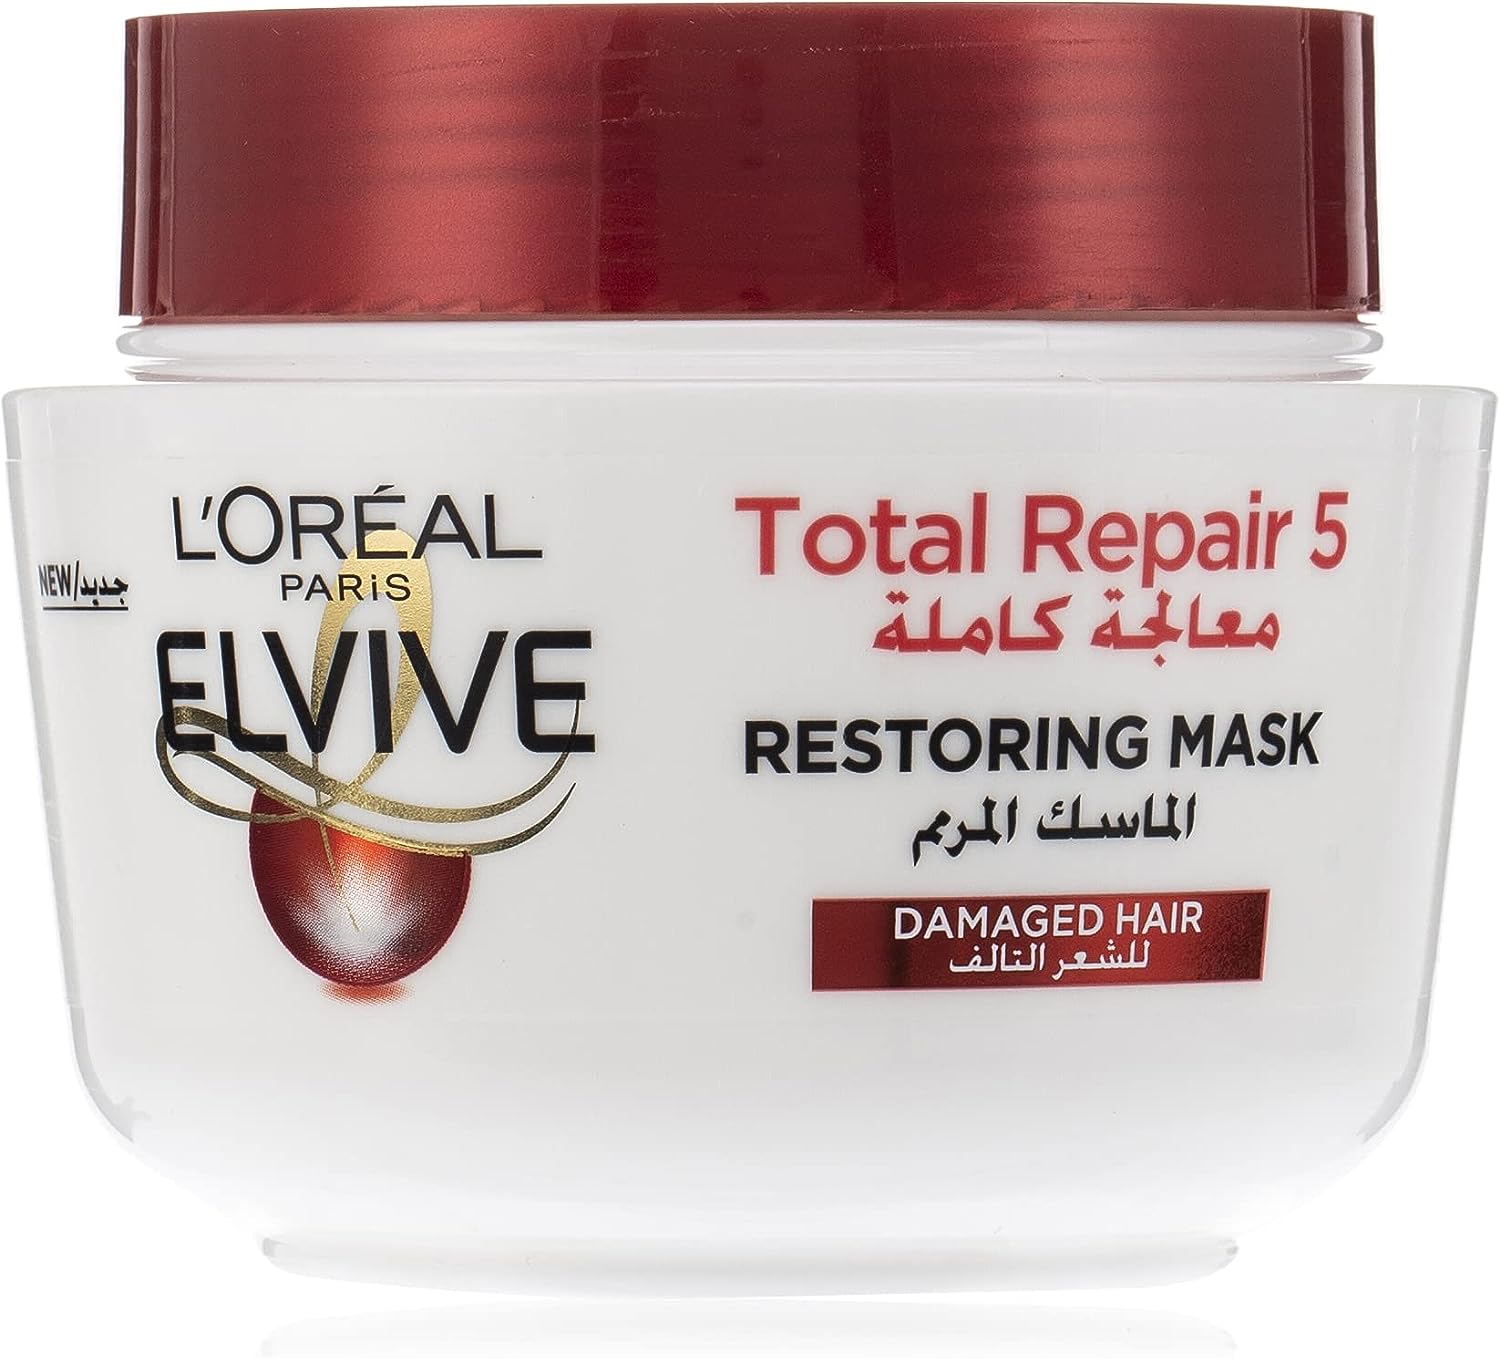 LOreal Paris Elvive Total Repair 5 Restoring Mask, 300 ml